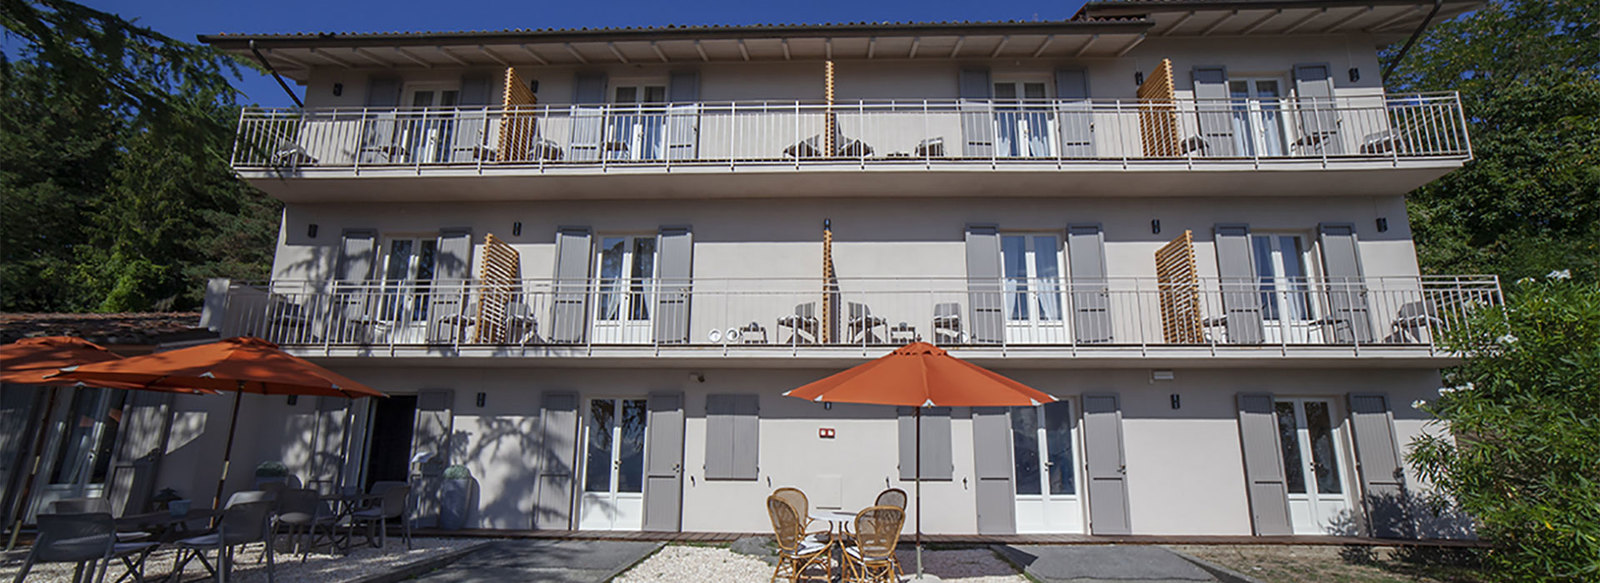 boutique hotel, baite di montagna, B&B e case vacanze in un unico resort in Toscana